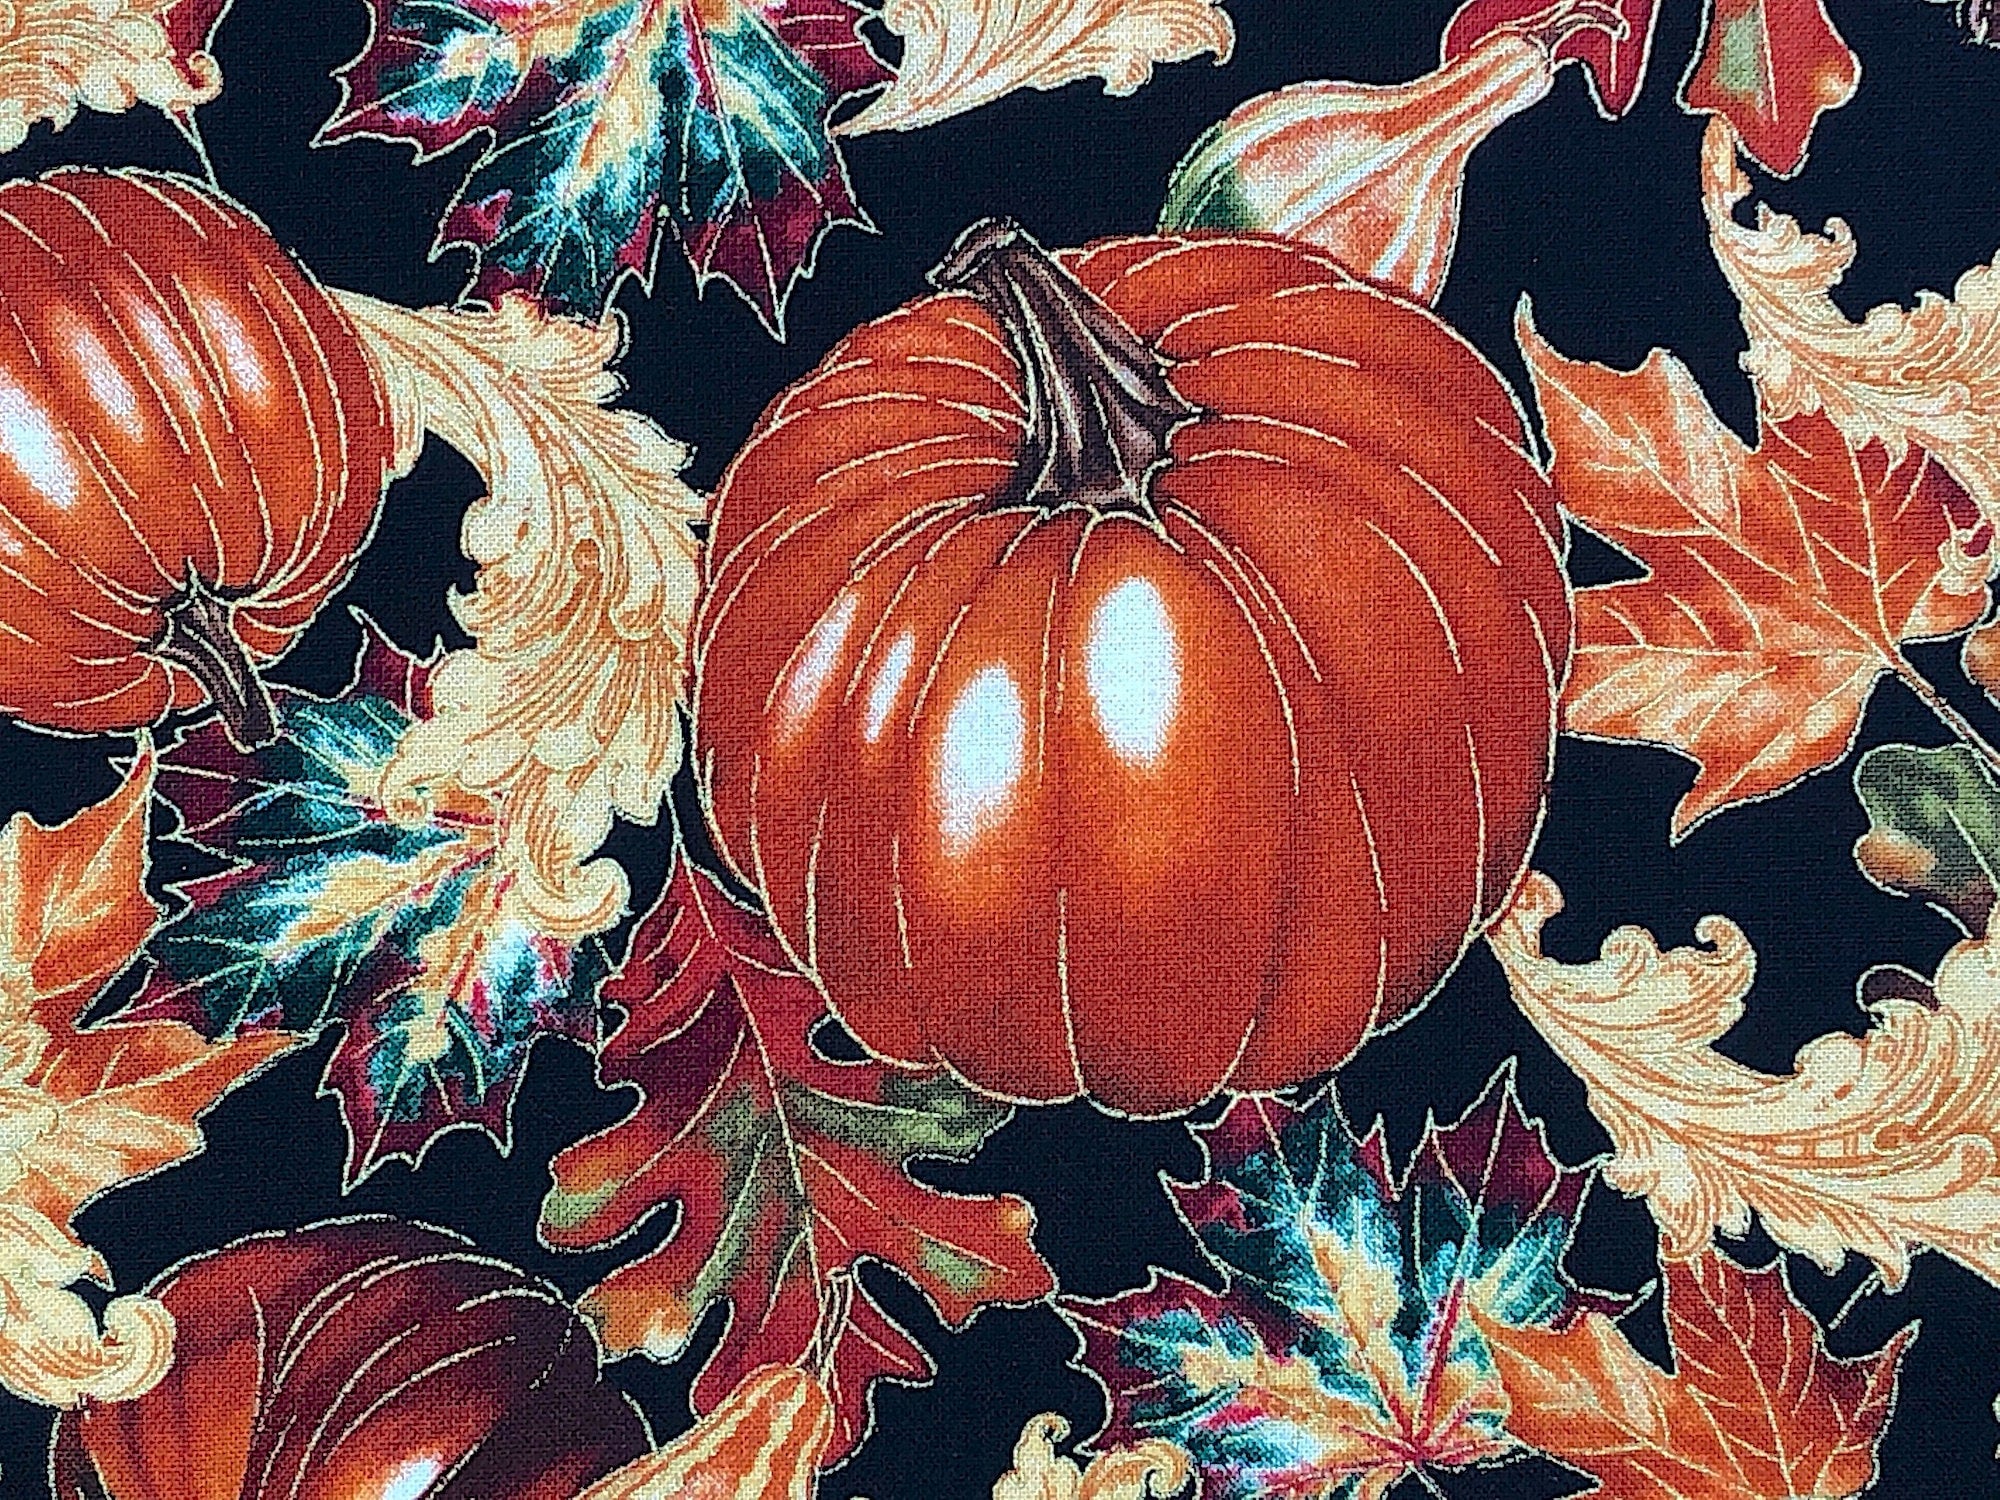 Close up of an orange pumpkin.